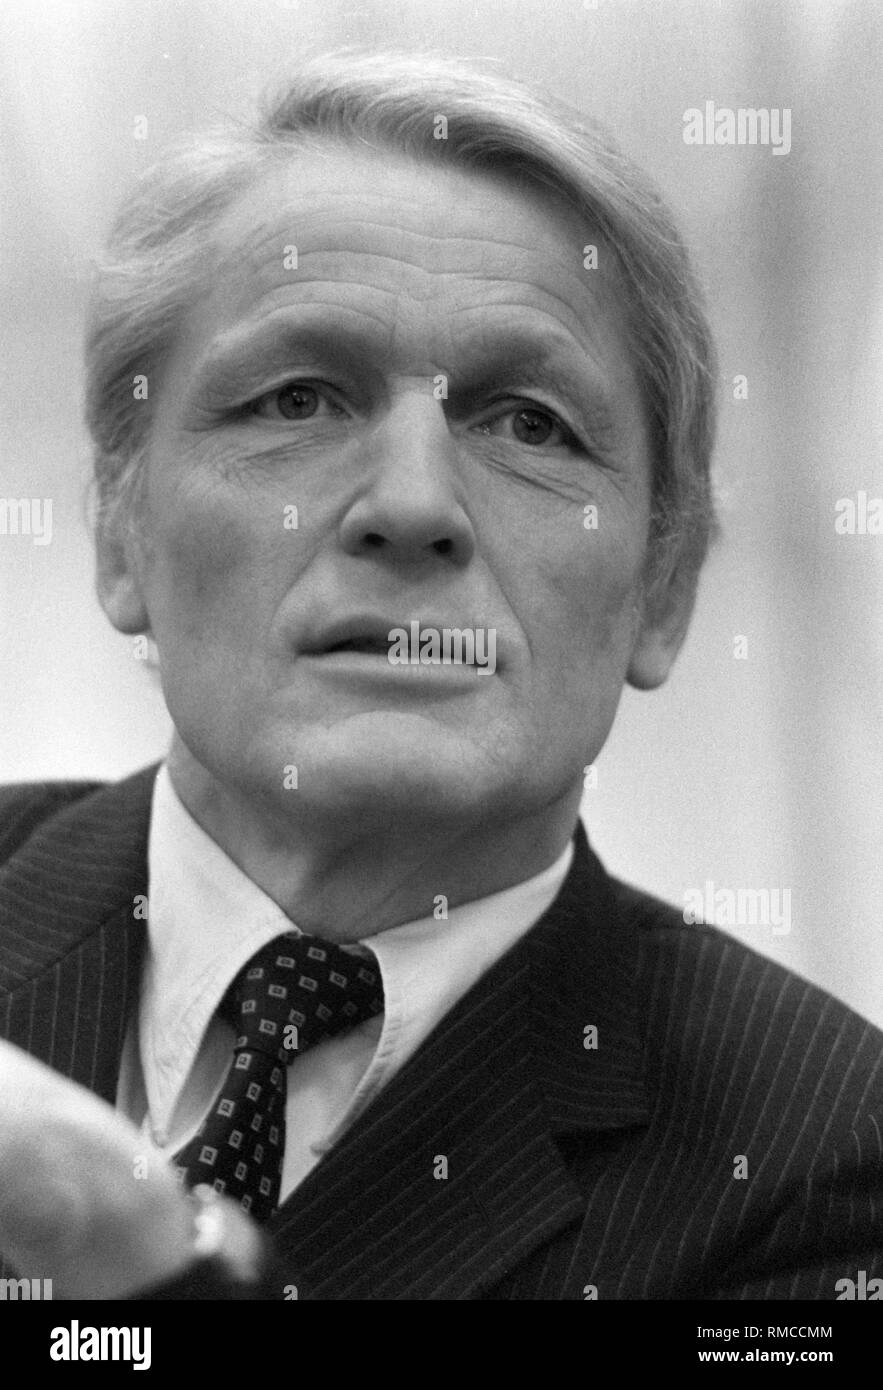 Der ehemalige Präsident des BND (1985-1990), Hans-Georg Wieck, feiert seinen 75. Geburtstag am 28. März 2003. Stockfoto